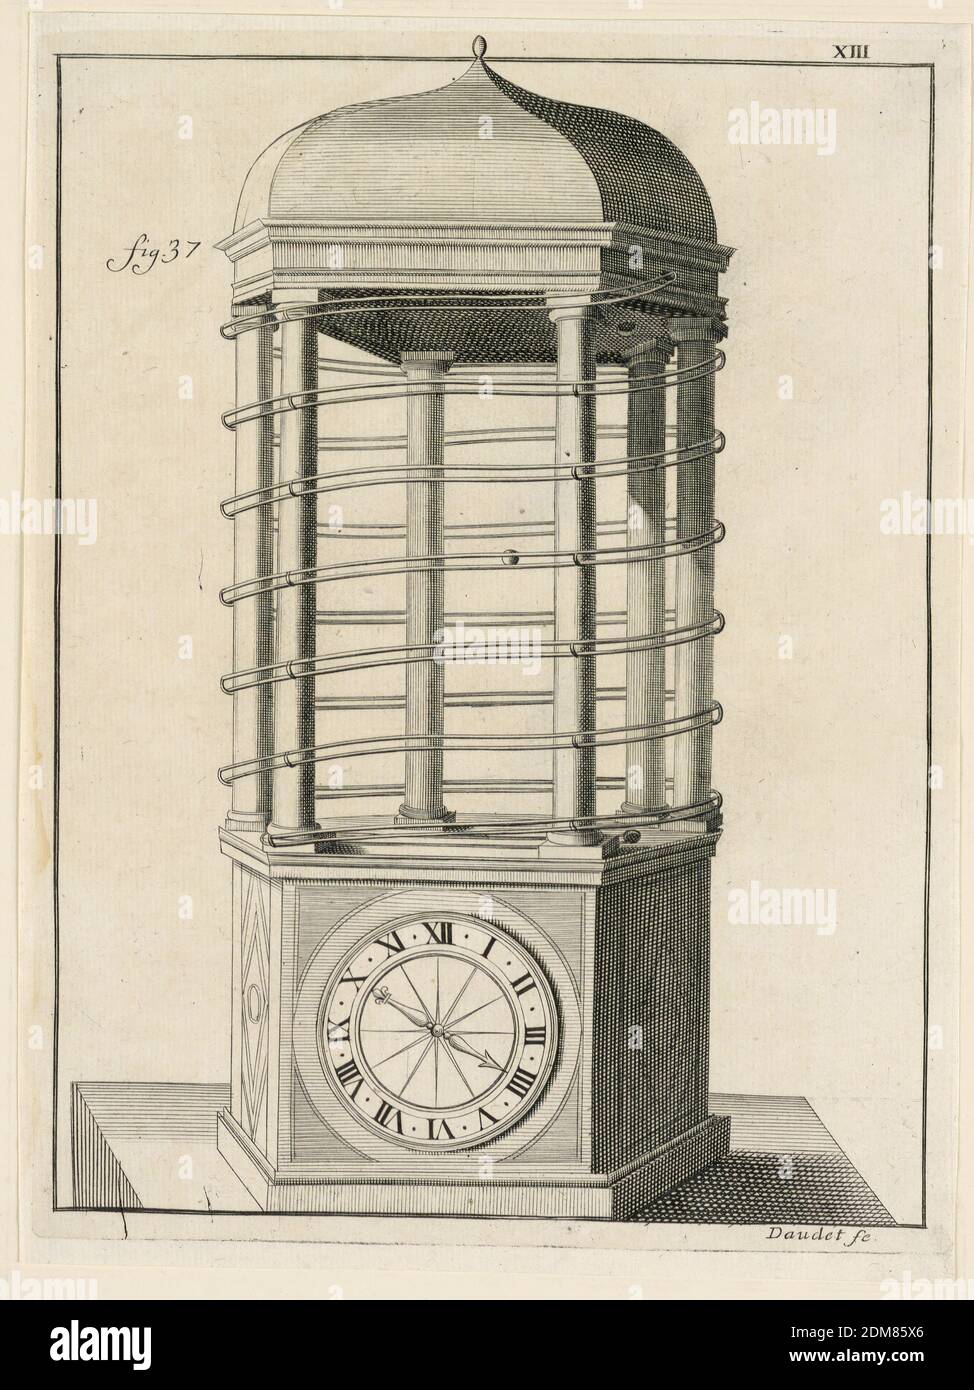 Design For a Clock, pl. XIII from 'Recueil d'Ouvrages Curieux de Mathematique et de Mecanique, ou Description du Cabinet', Gaspard Grollier de Seviere II, French, 1677 - 1745, Engraving on paper, France, 1719, Print Stock Photo